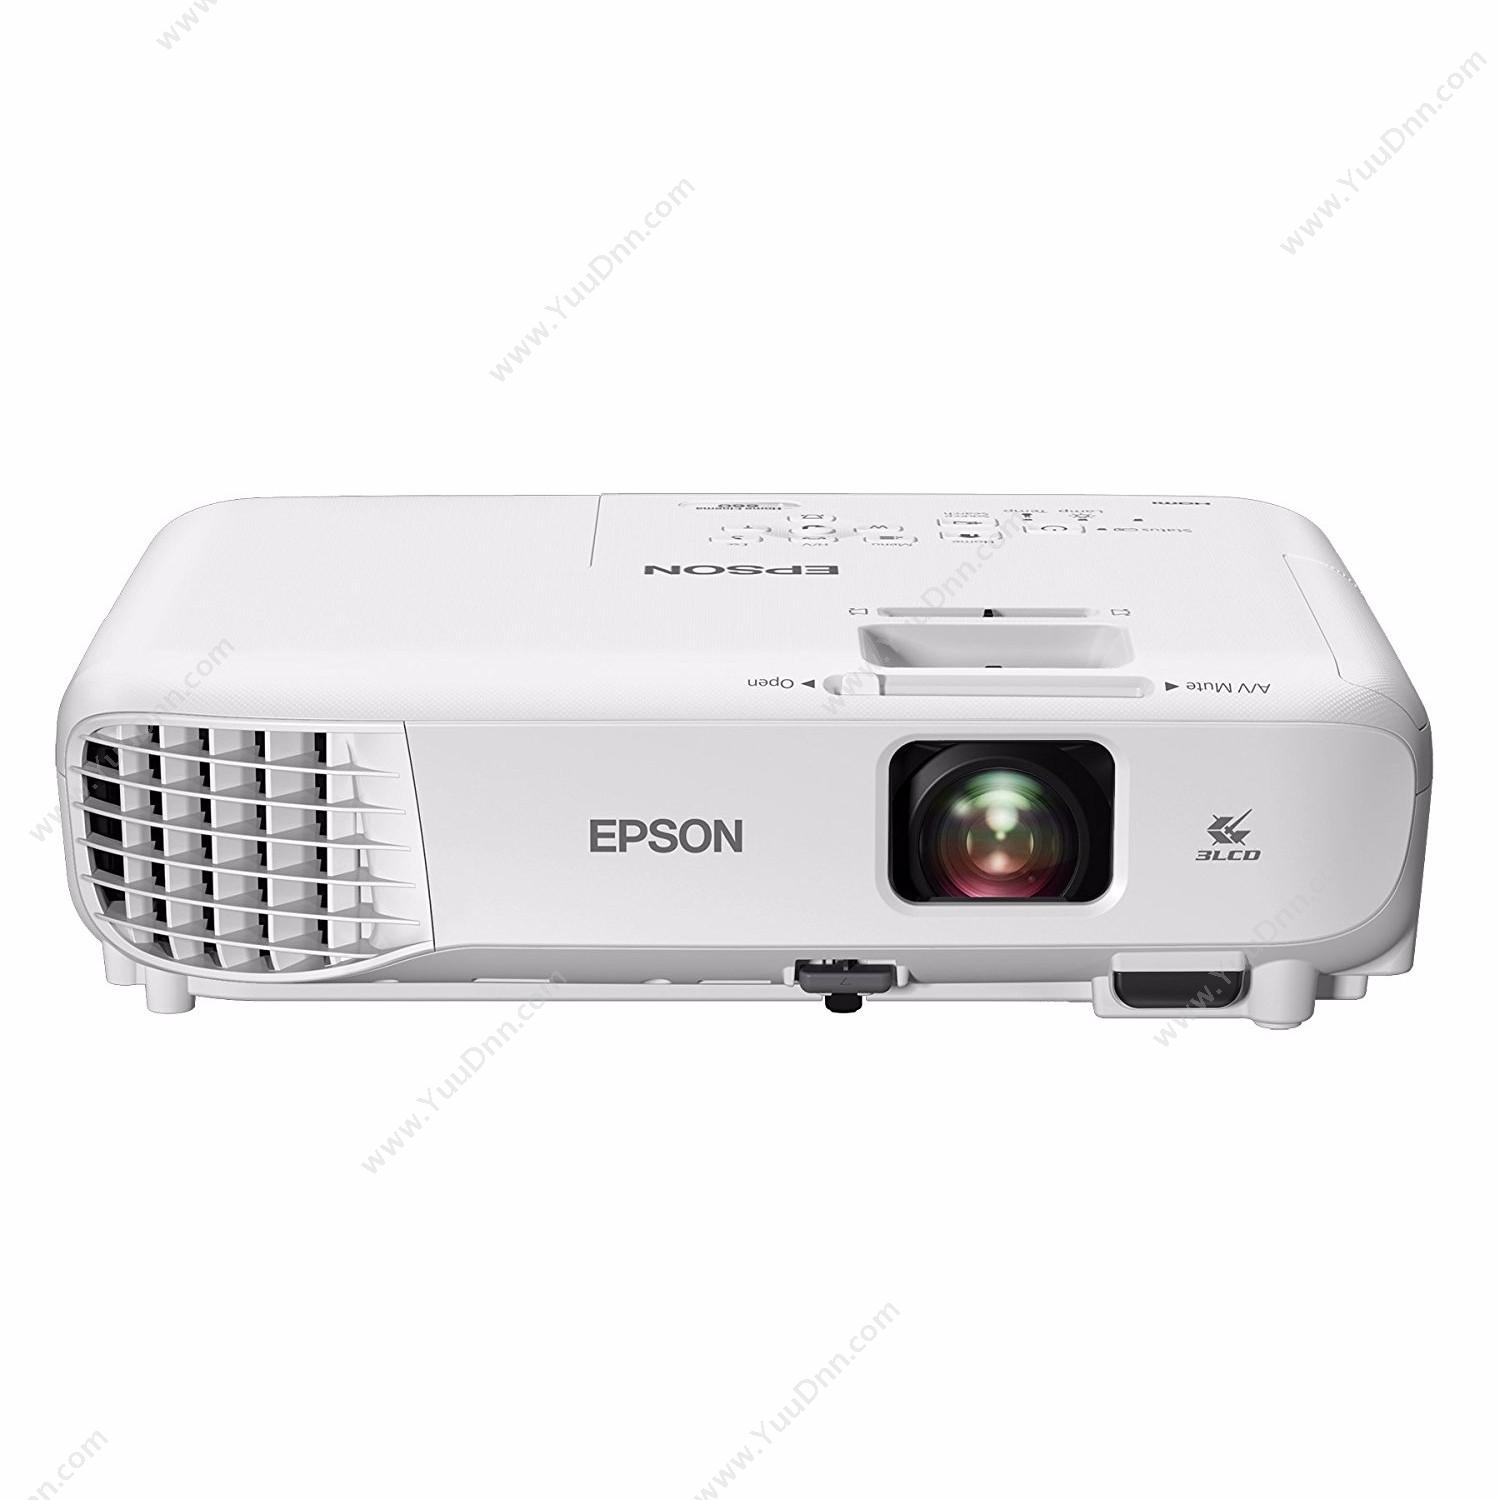 爱普生 Epson CB-X05 投影机